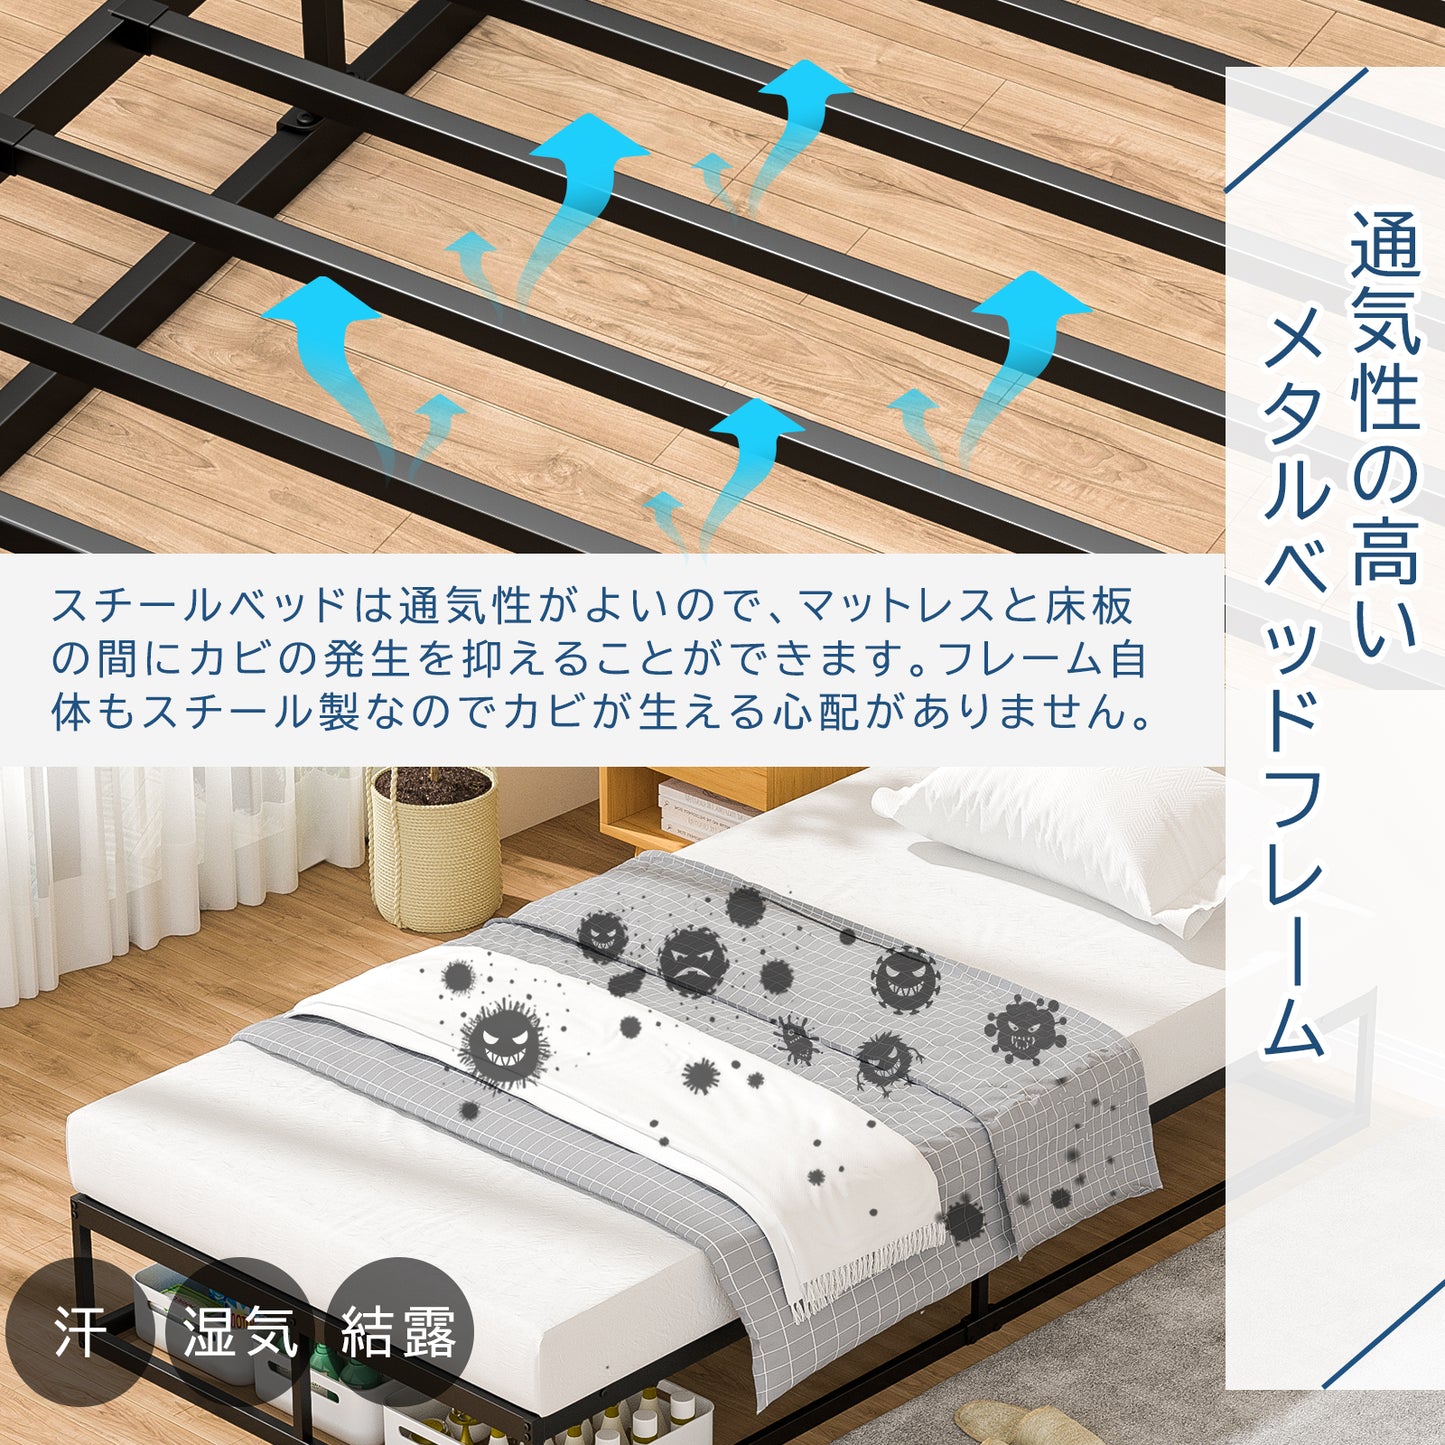 [耐荷重300kg]BD03ベッドフレーム シングル パイプベッドホワイト 静音 シングルベッド すのこベッド下収納 耐久性 通気性 組立簡単 工具付き シングルメタルベッド